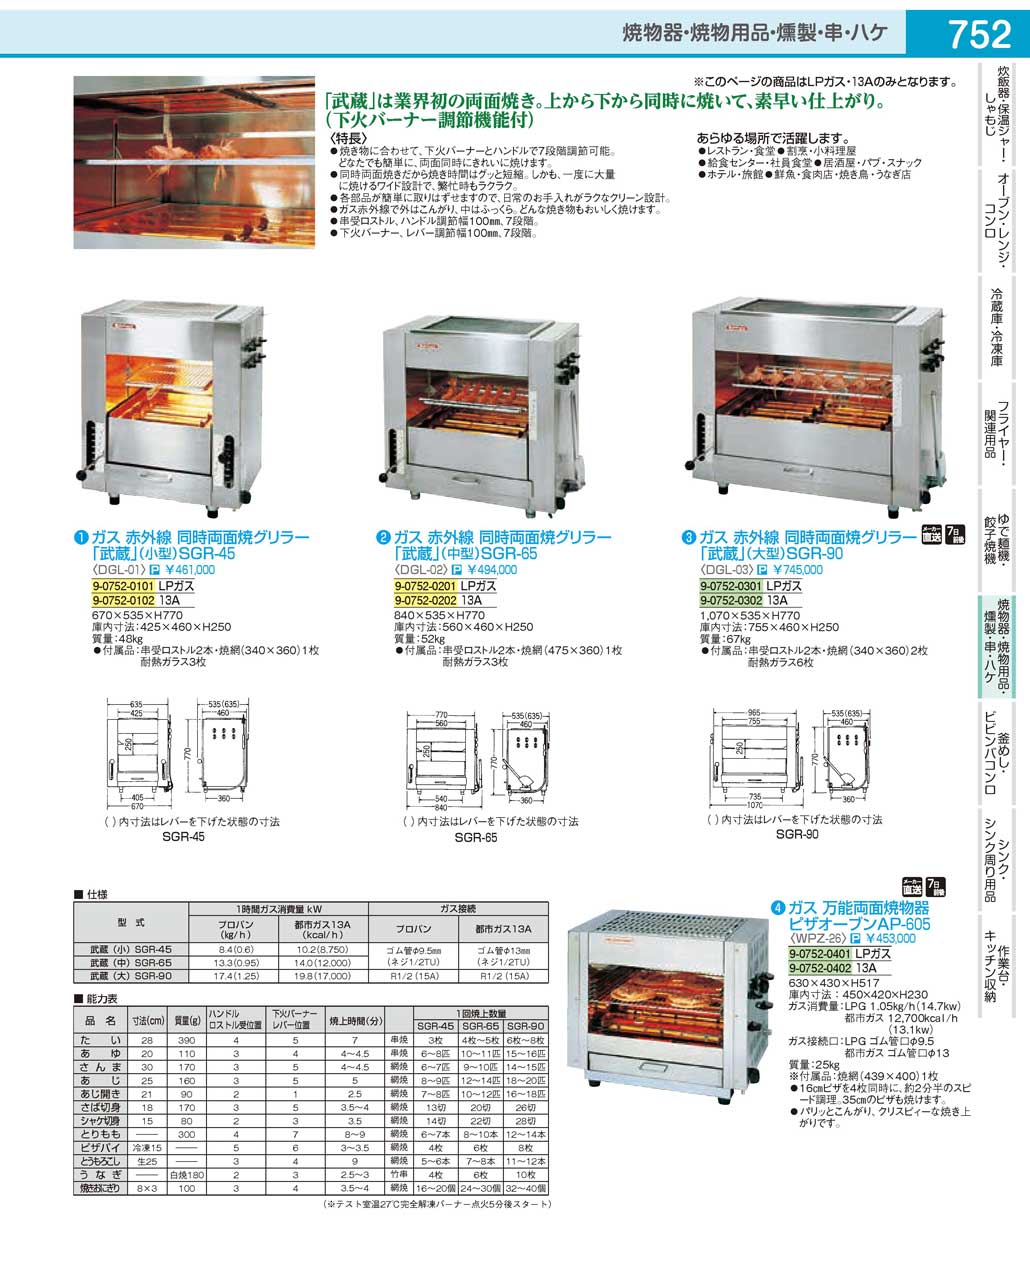 日本最大級の品揃え 同時両面焼物器 NEW武蔵 SGR-N65 LP